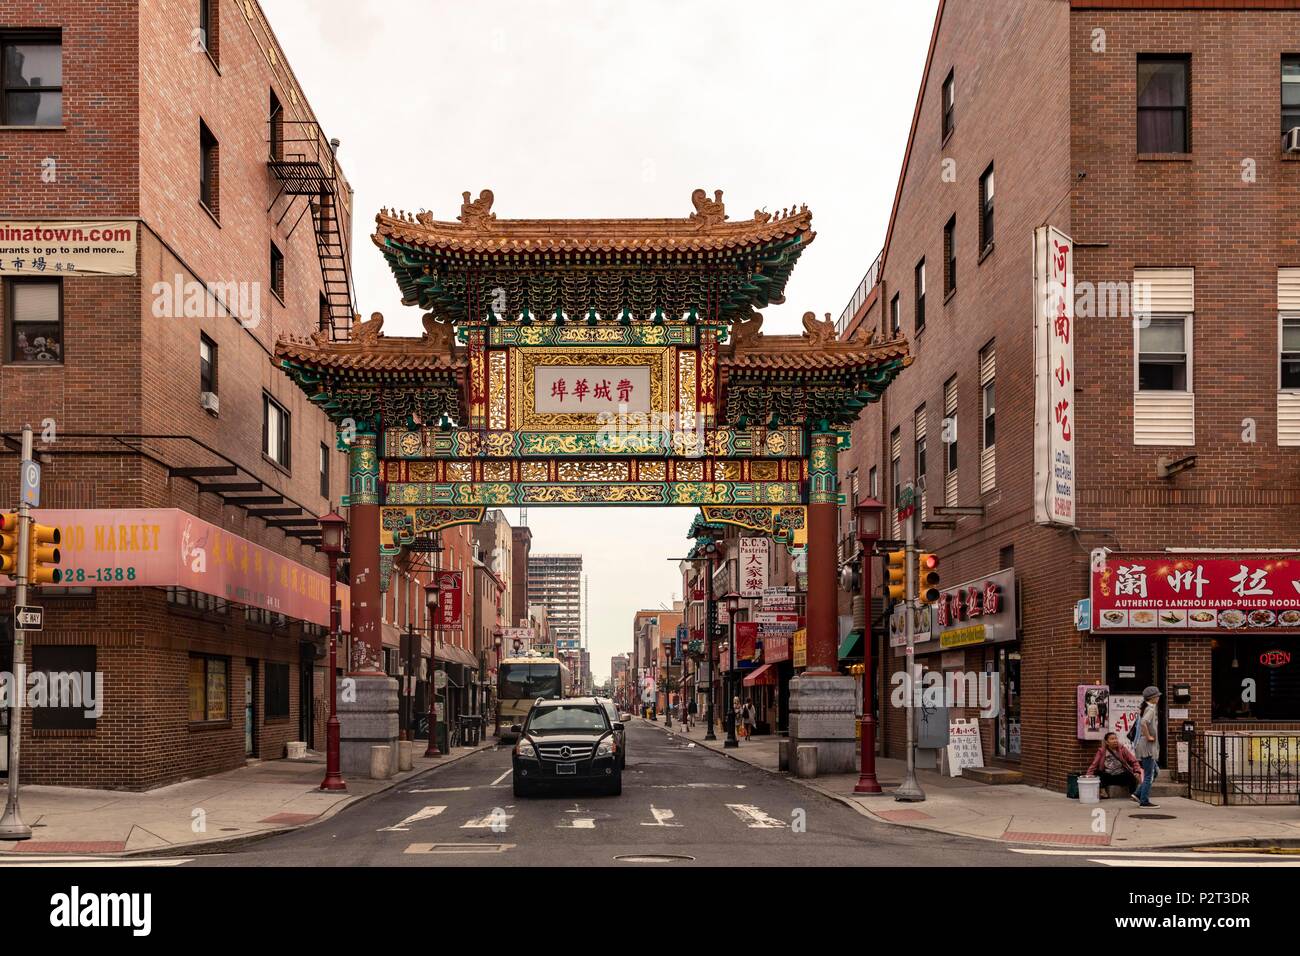 Chinatown, Philadelphia, USA Stock Photo